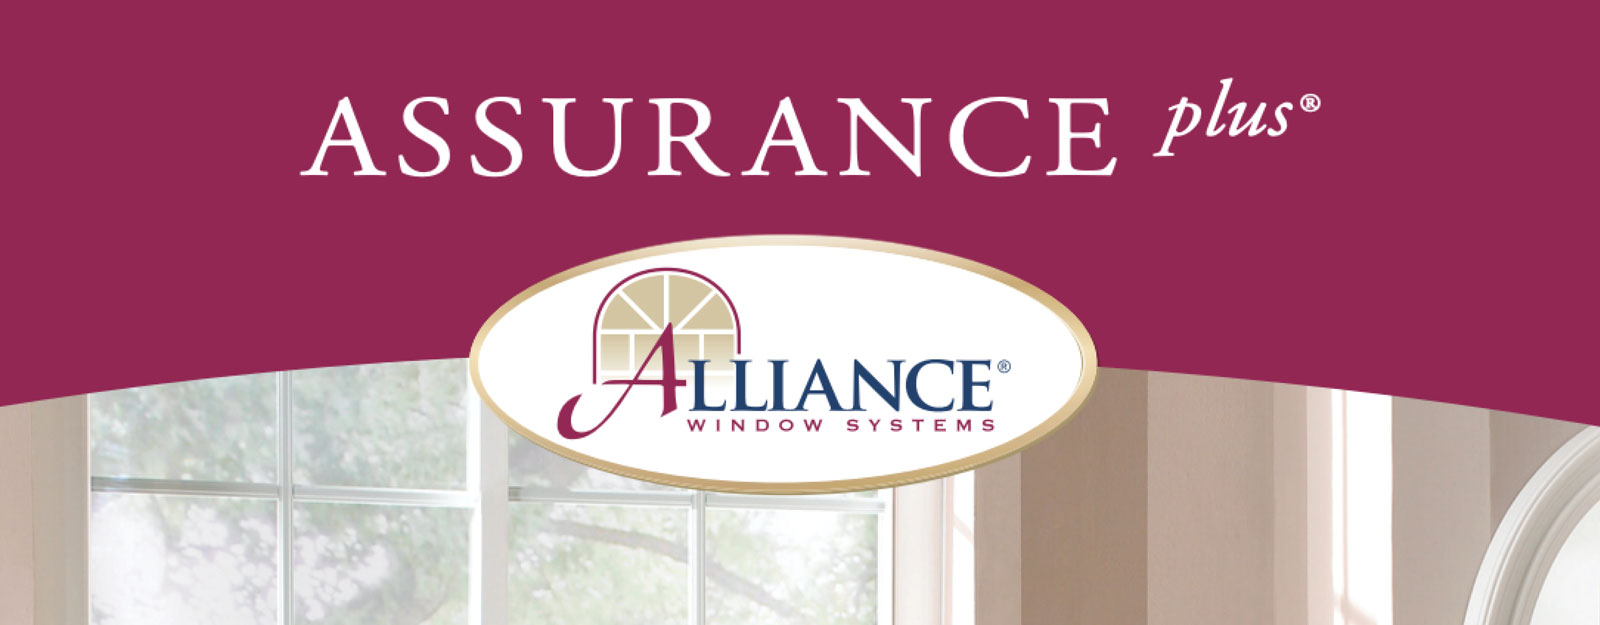 Assurance Plus by Alliance Windows warranty PDF